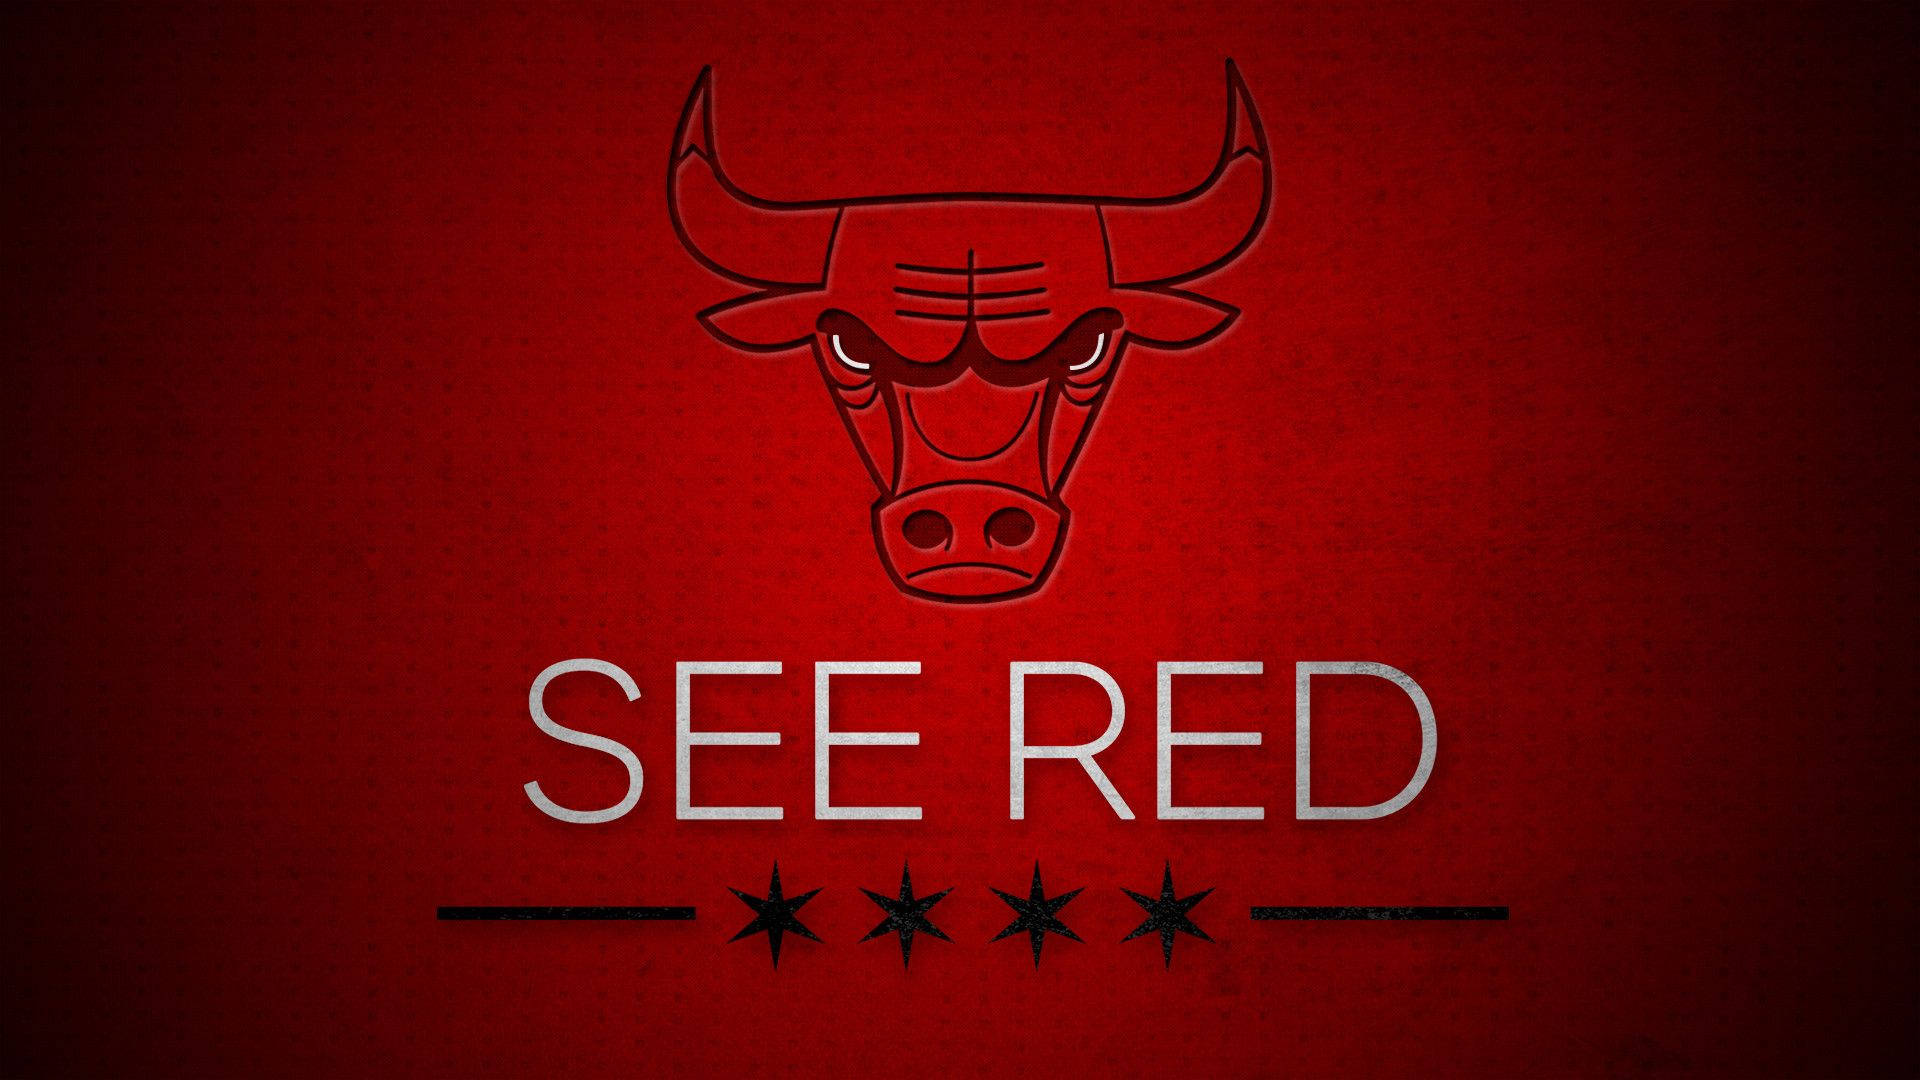 Chicago Bulls Four Black Stars Logo Background